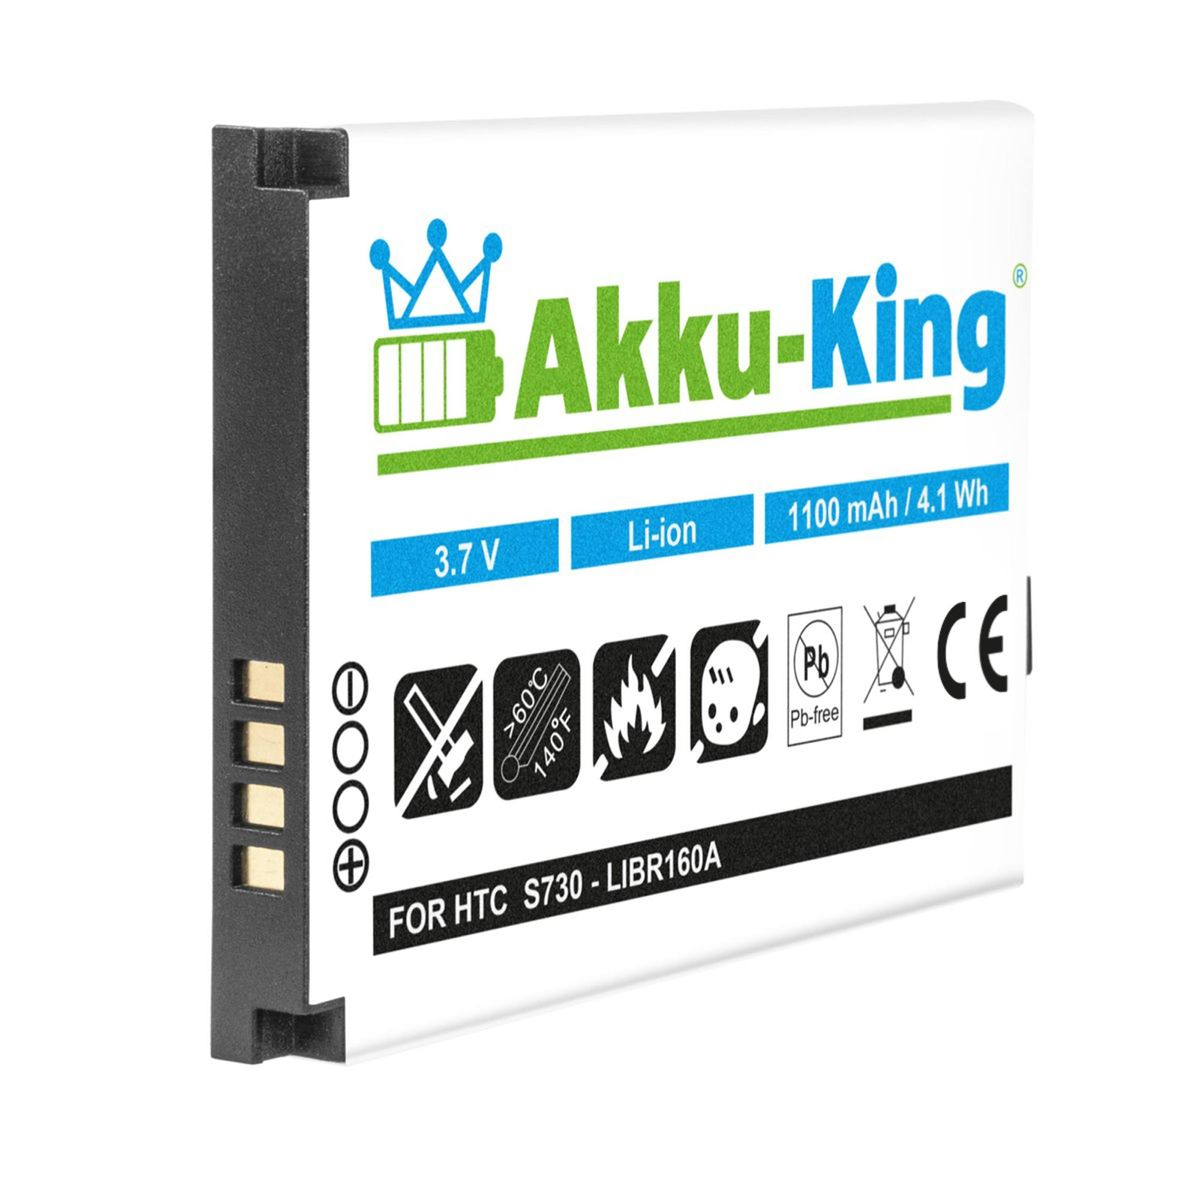 AKKU-KING Akku kompatibel mit HTC Volt, S180 Handy-Akku, 1100mAh 3.7 BA Li-Ion